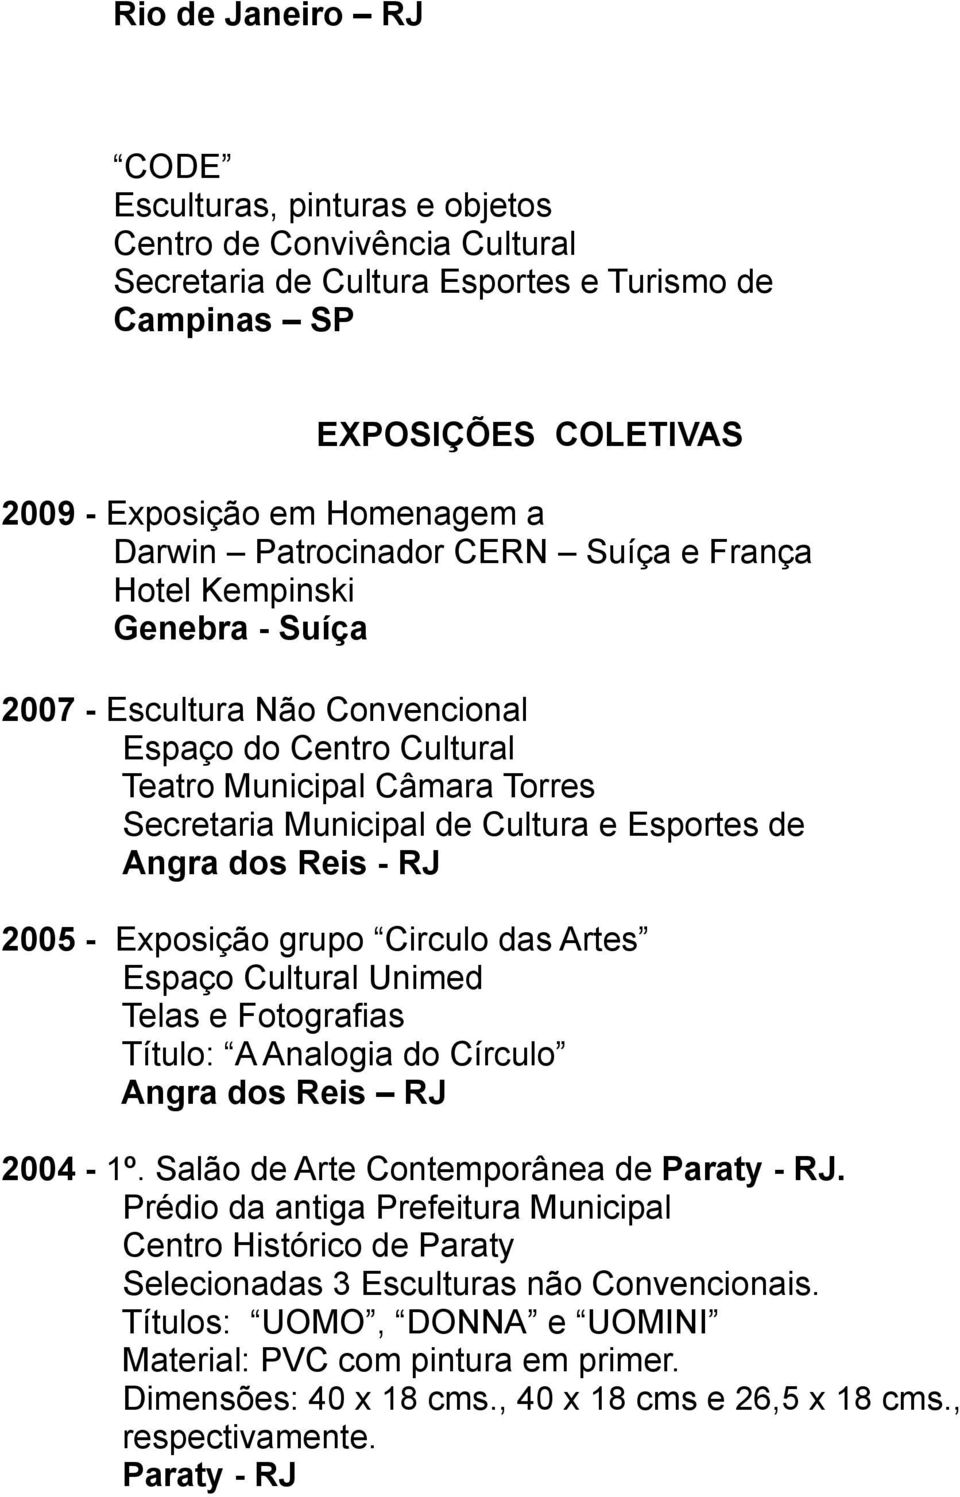 Artes Espaço Cultural Unimed Telas e Fotografias Título: A Analogia do Círculo 2004-1º. Salão de Arte Contemporânea de Paraty - RJ.